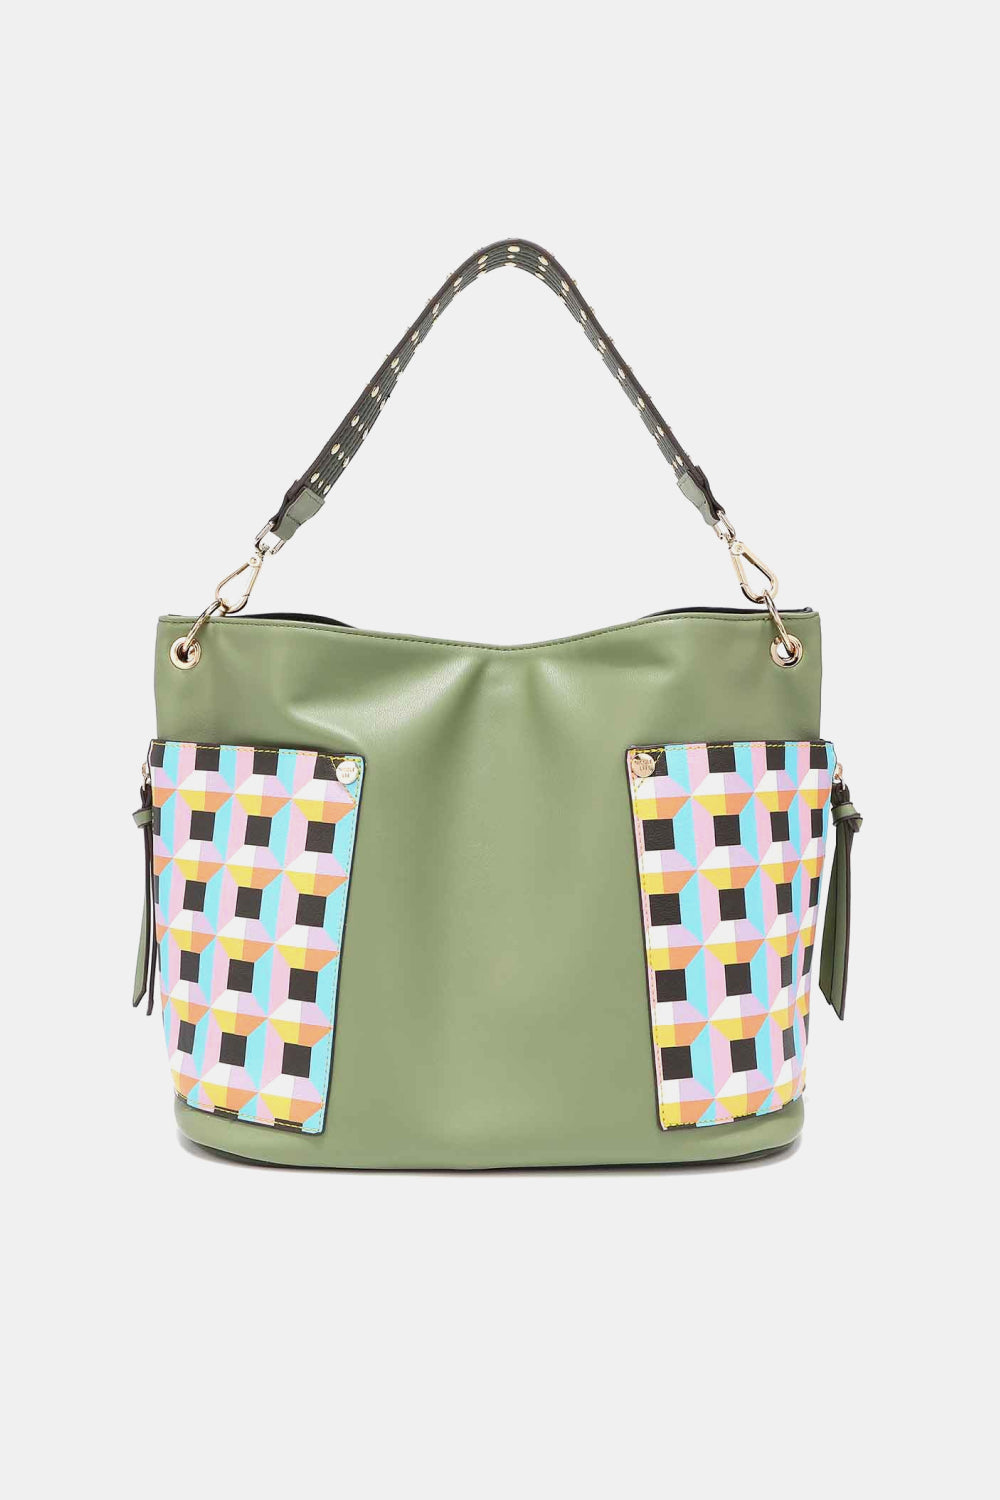 Nicole Lee USA Quihn 3-Piece Handbag Set free shipping -Oh Em Gee Boutique